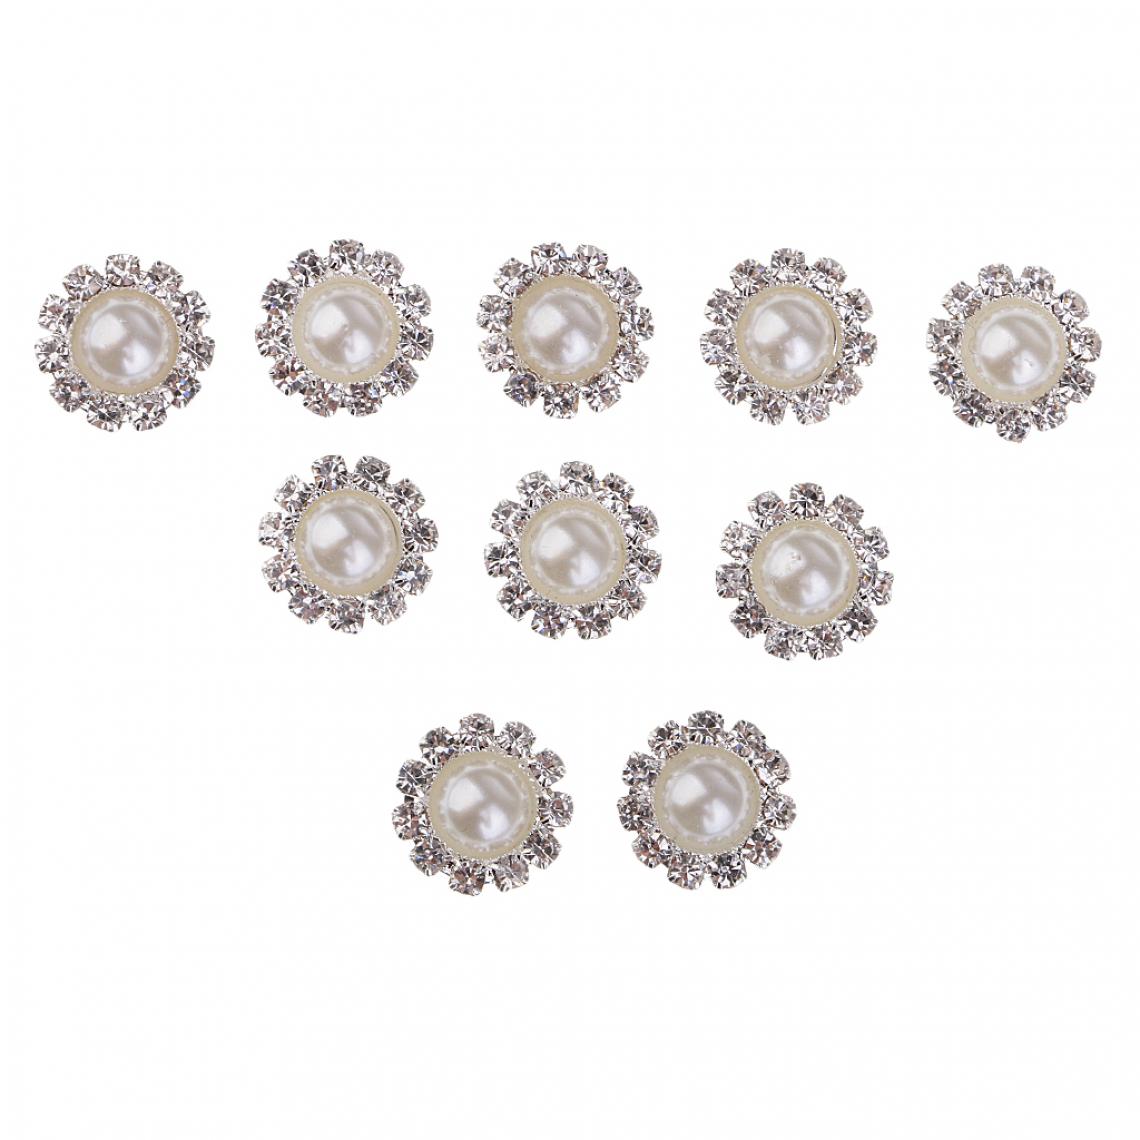 marque generique - 10 pièces rondes perles strass boutons embellissements 10mm or - Poignée de meuble